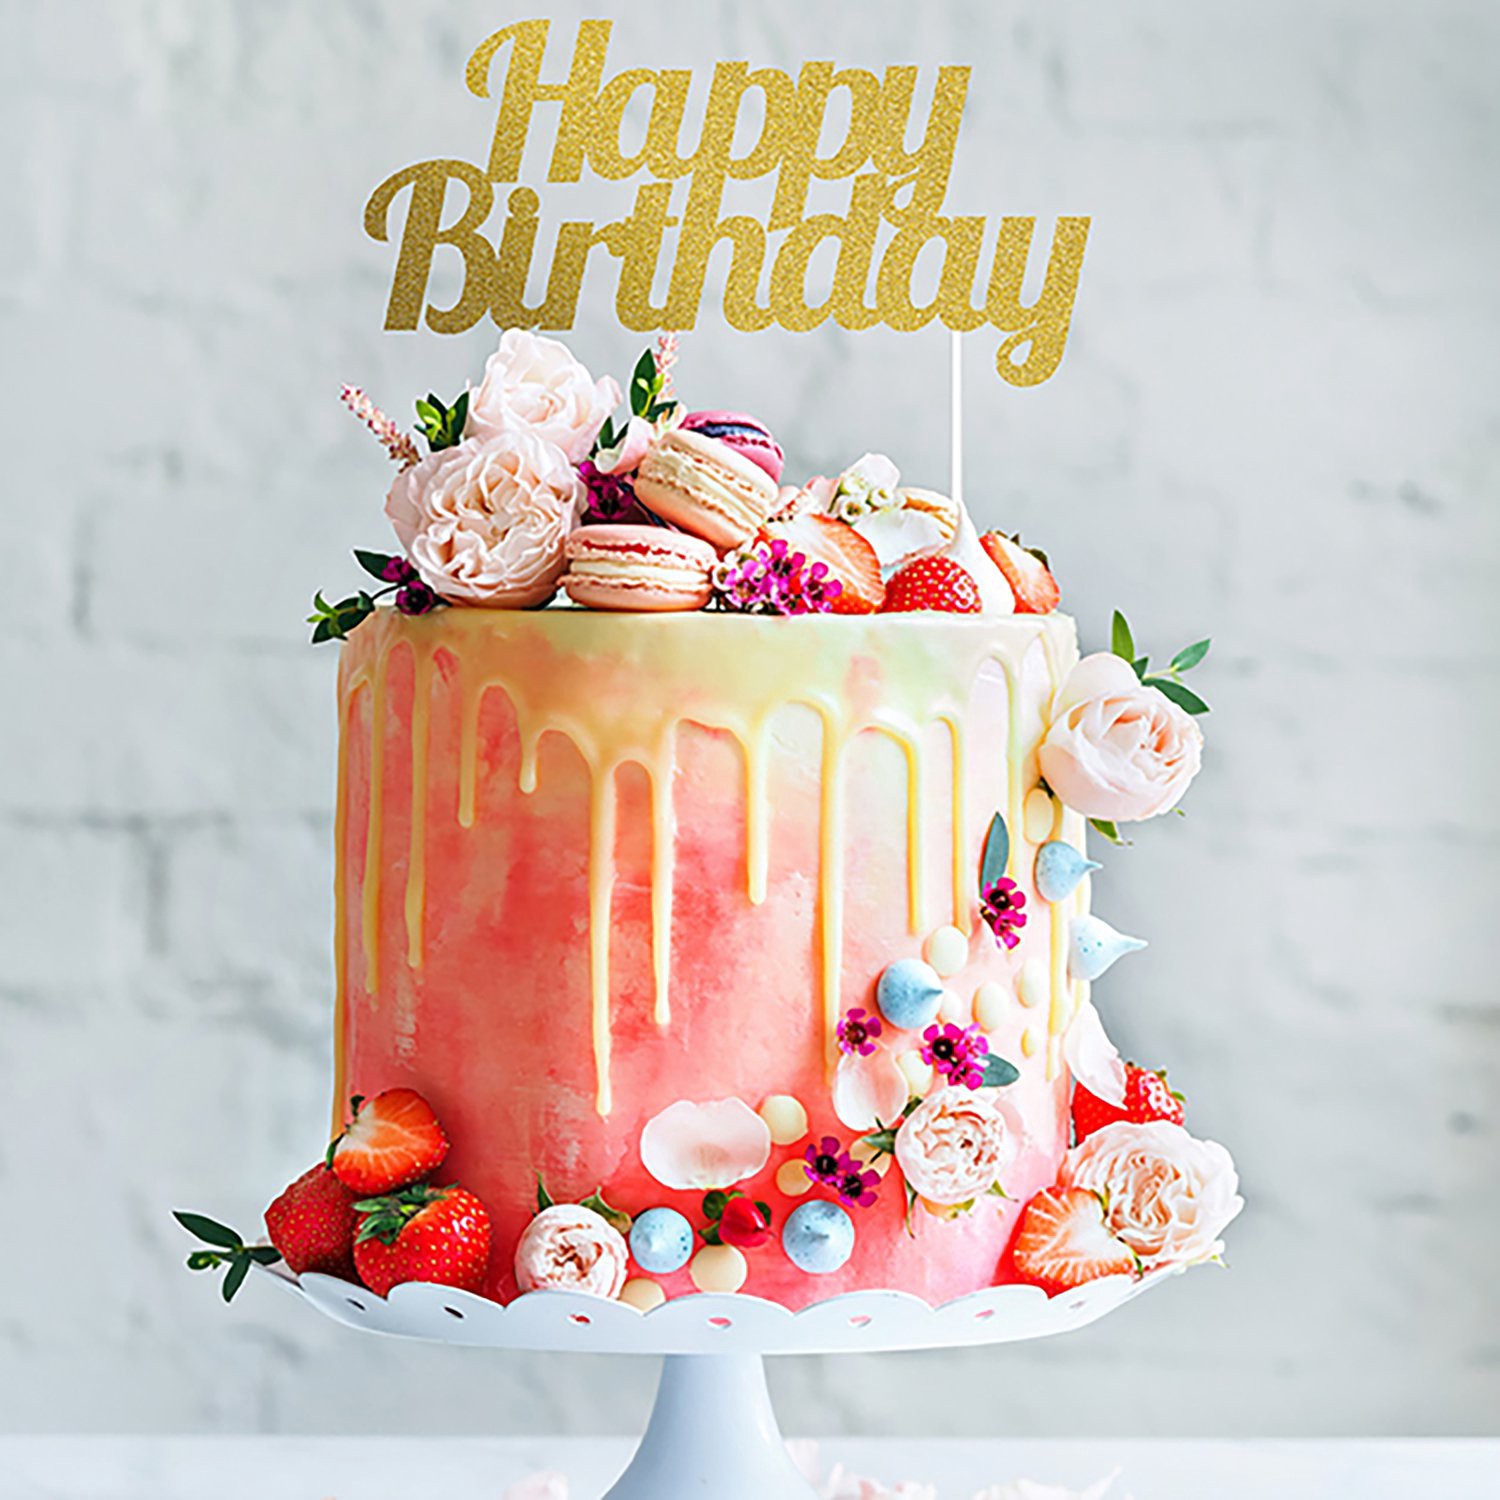 Happy Birthday cake image